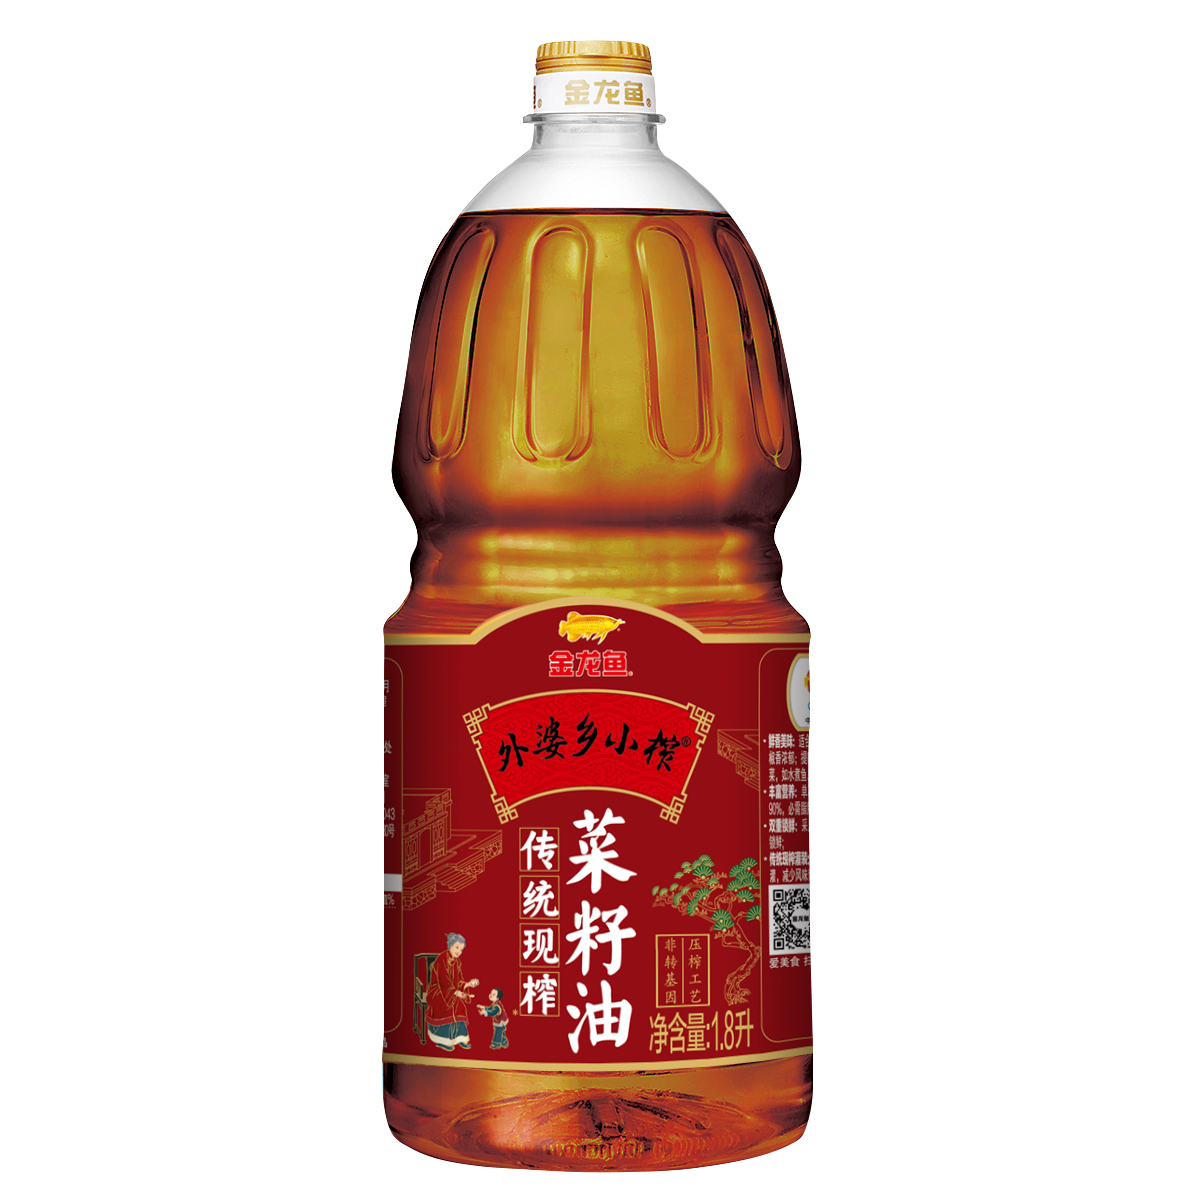 金龙鱼外婆乡小榨传统现榨菜籽油1.8L(瓶)